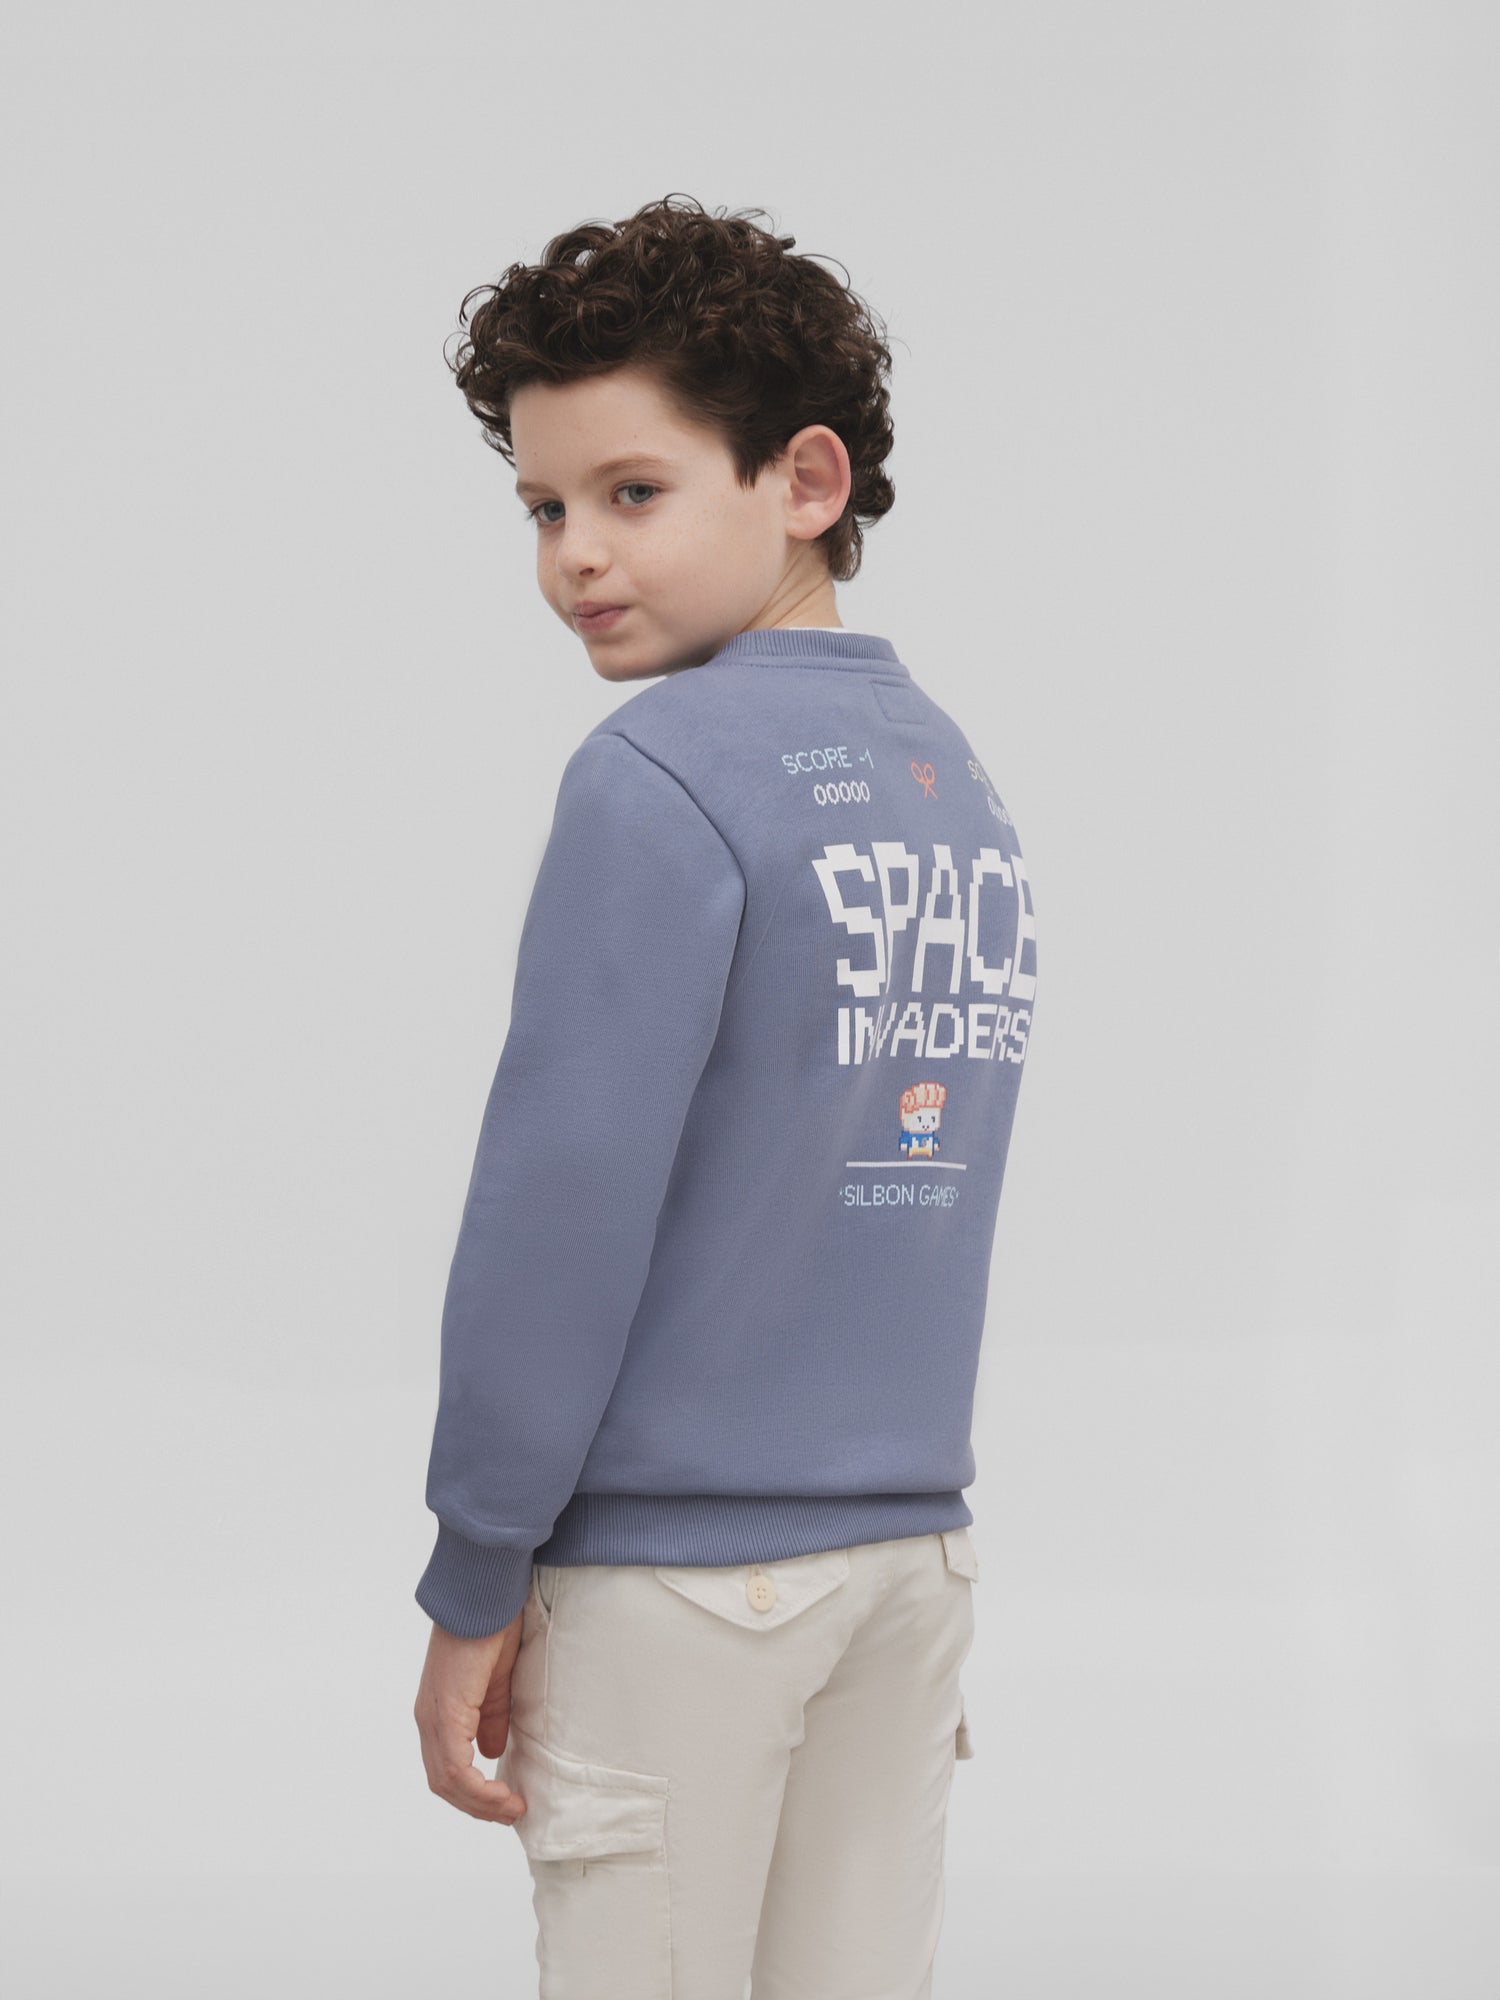 kids space invaders sweatshirt gray blue